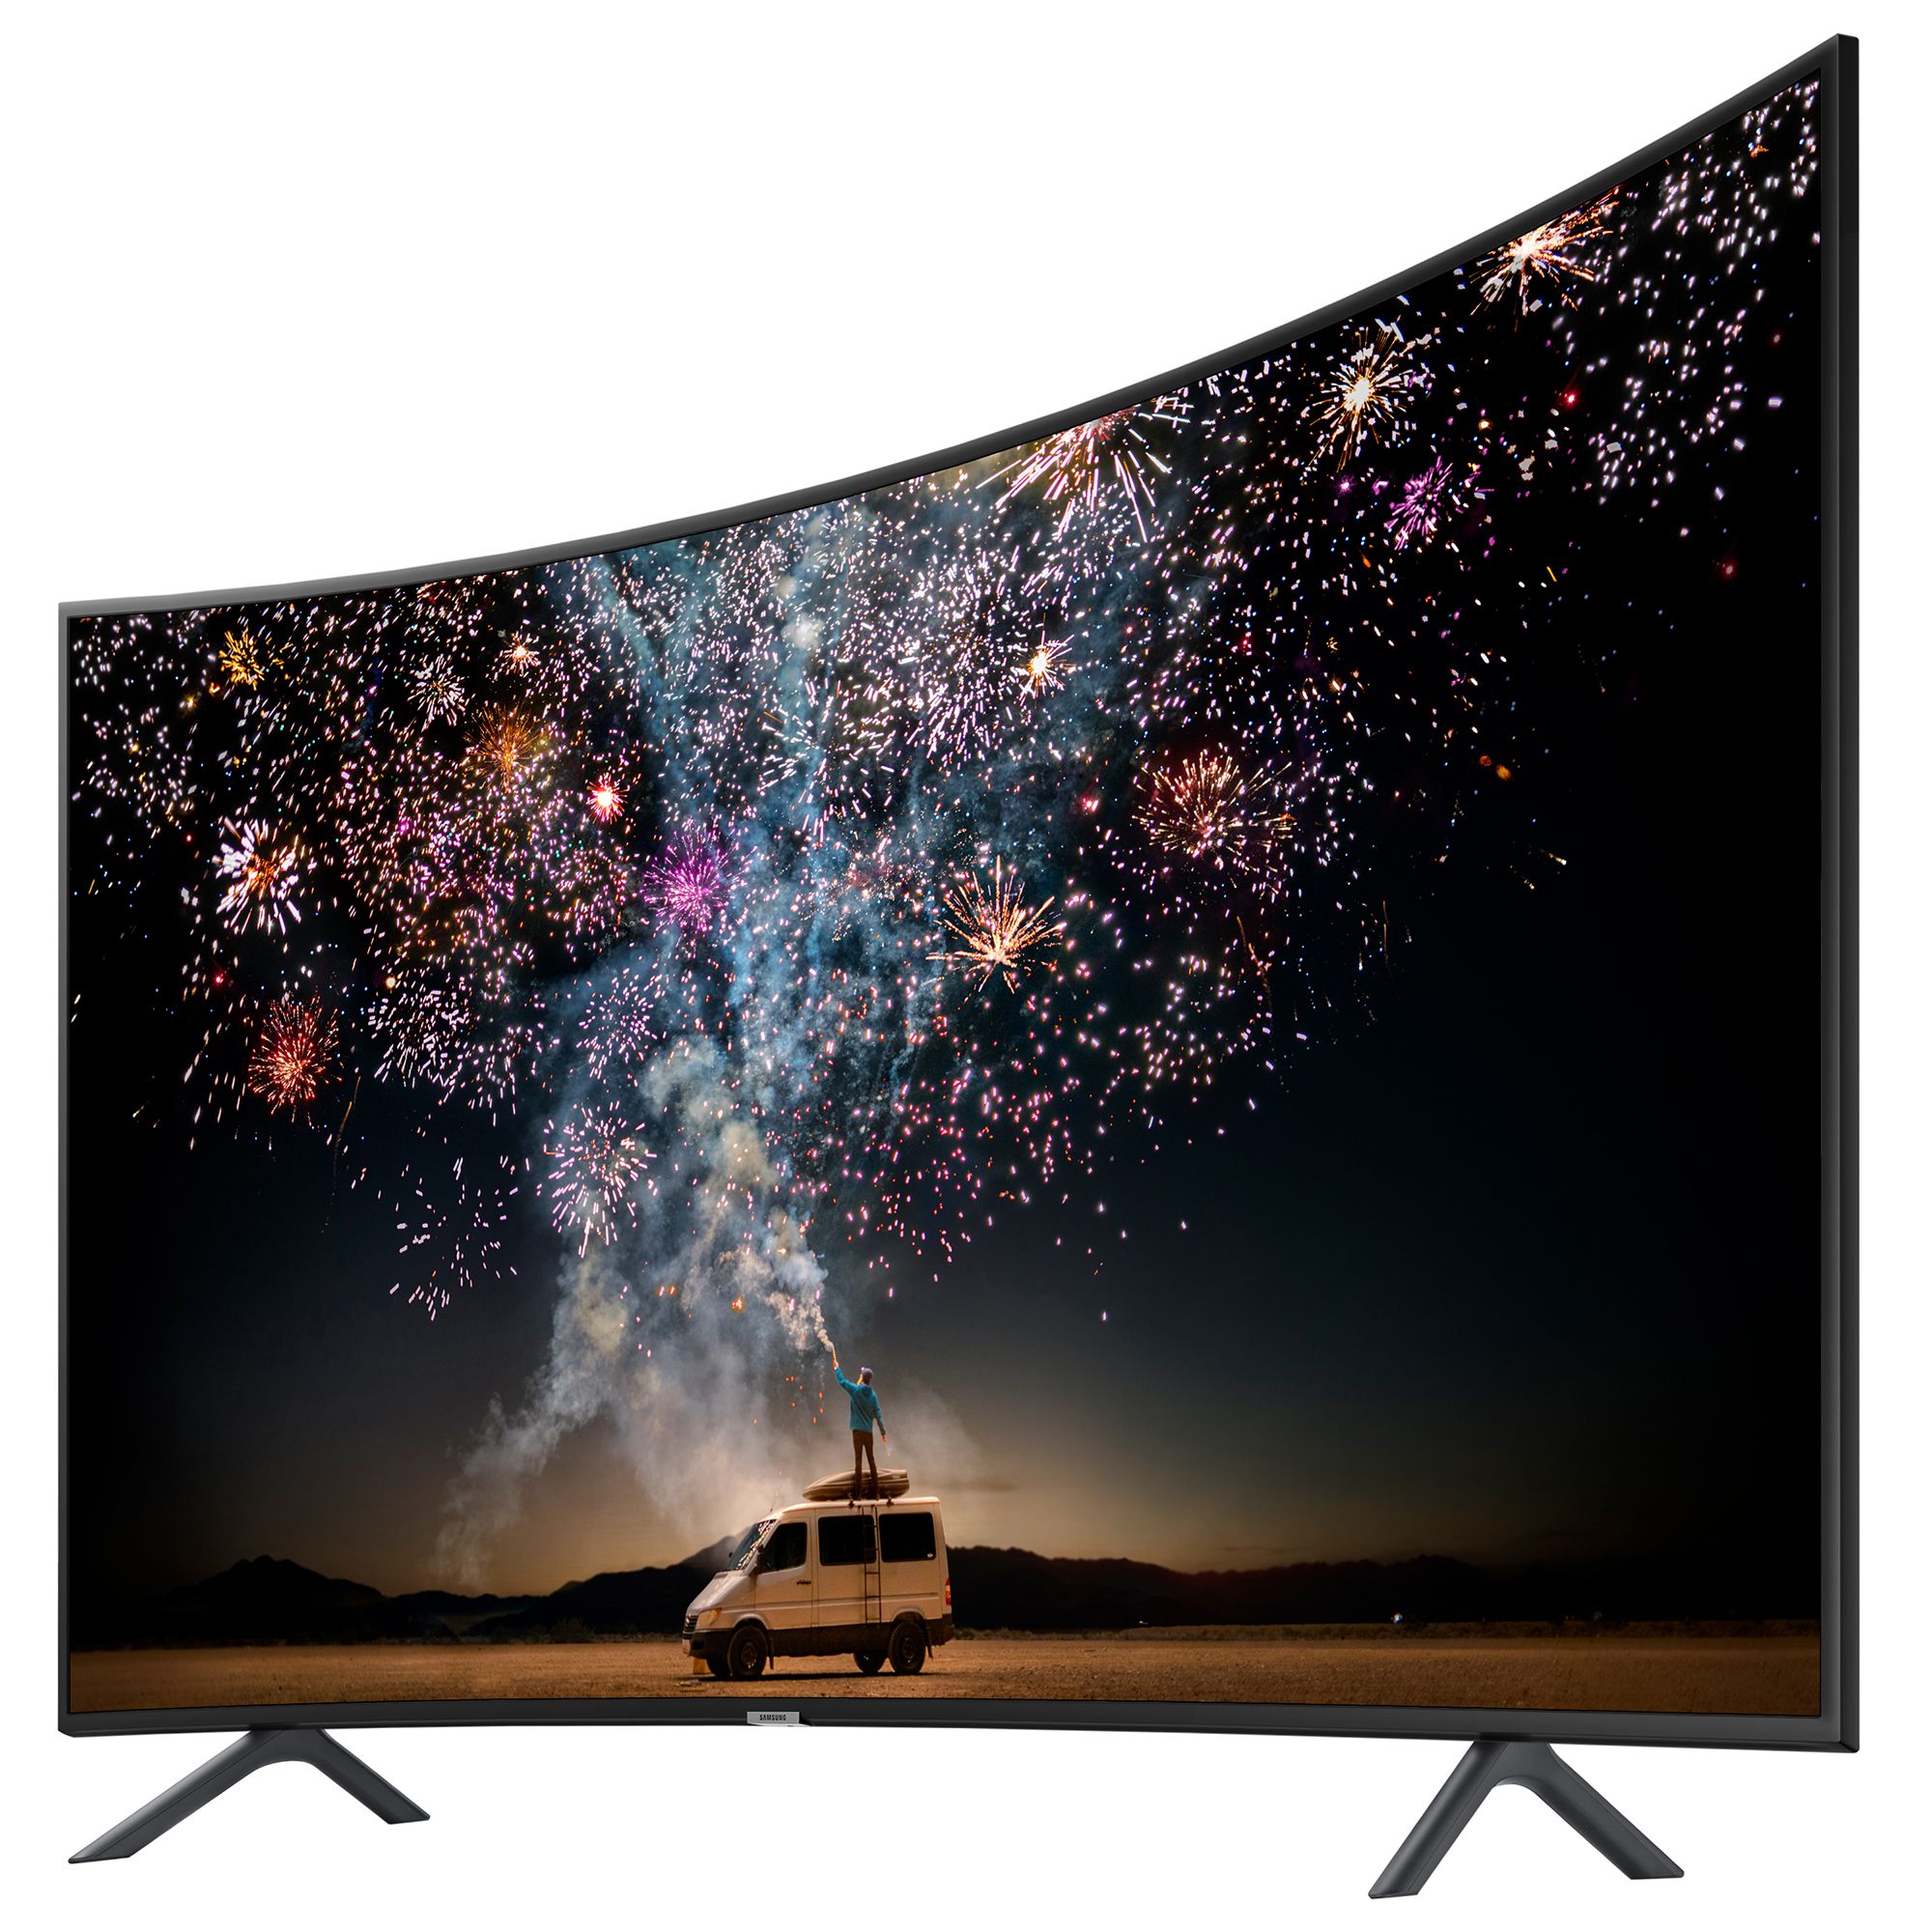 Гнутый экран. Телевизор Samsung ue65ru7300u. Телевизор Samsung ue55ru7300u 54.6" (2019). Телевизор самсунг изогнутый экран 55. 55" Телевизор Samsung ue55ru7300u 2019 led, HDR.